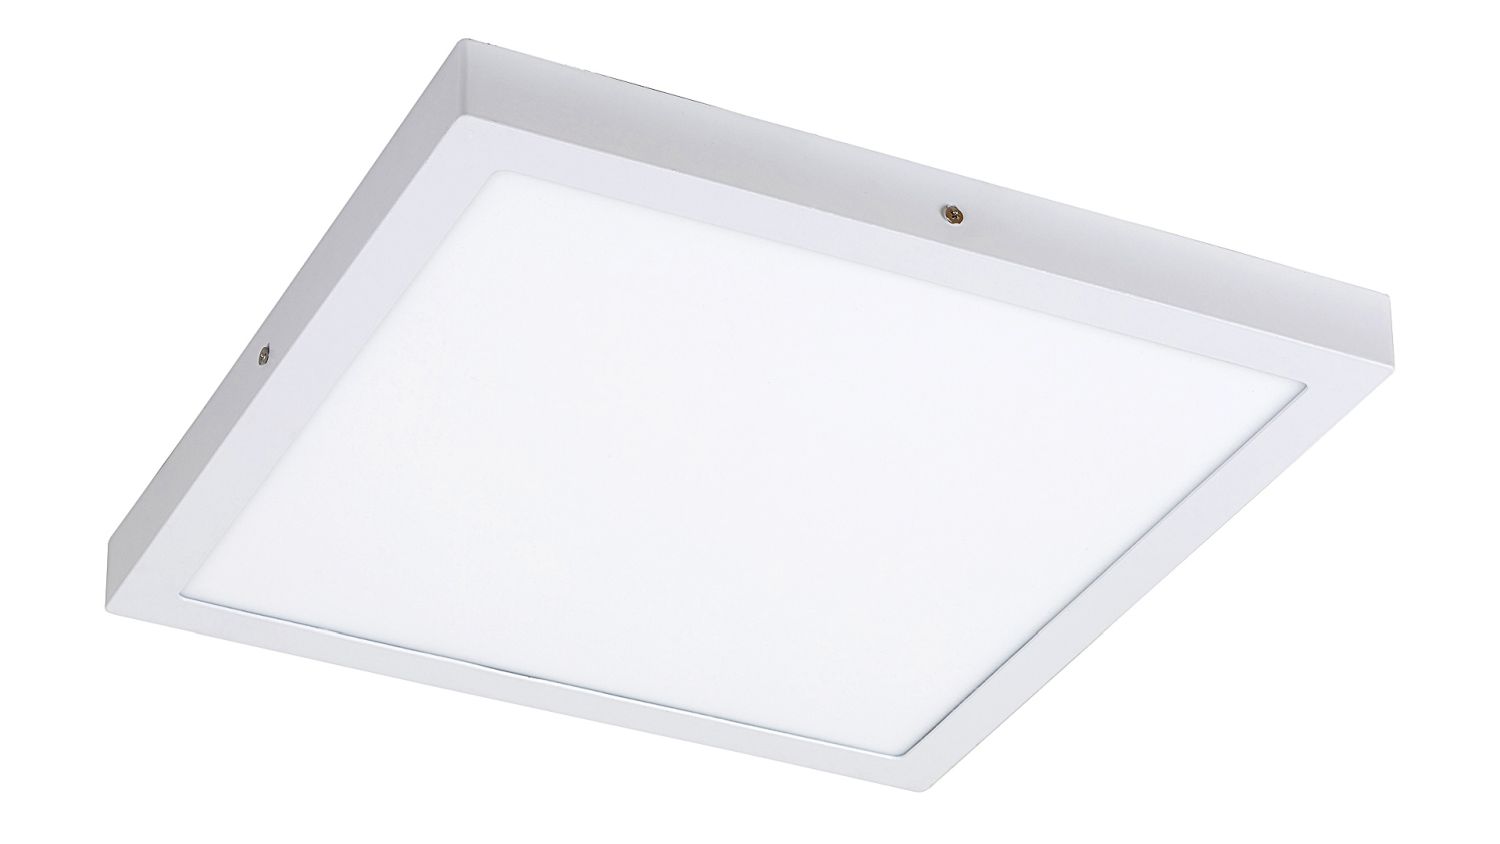 Flache LED Deckenlampe Weiß 36W blendarm Modern